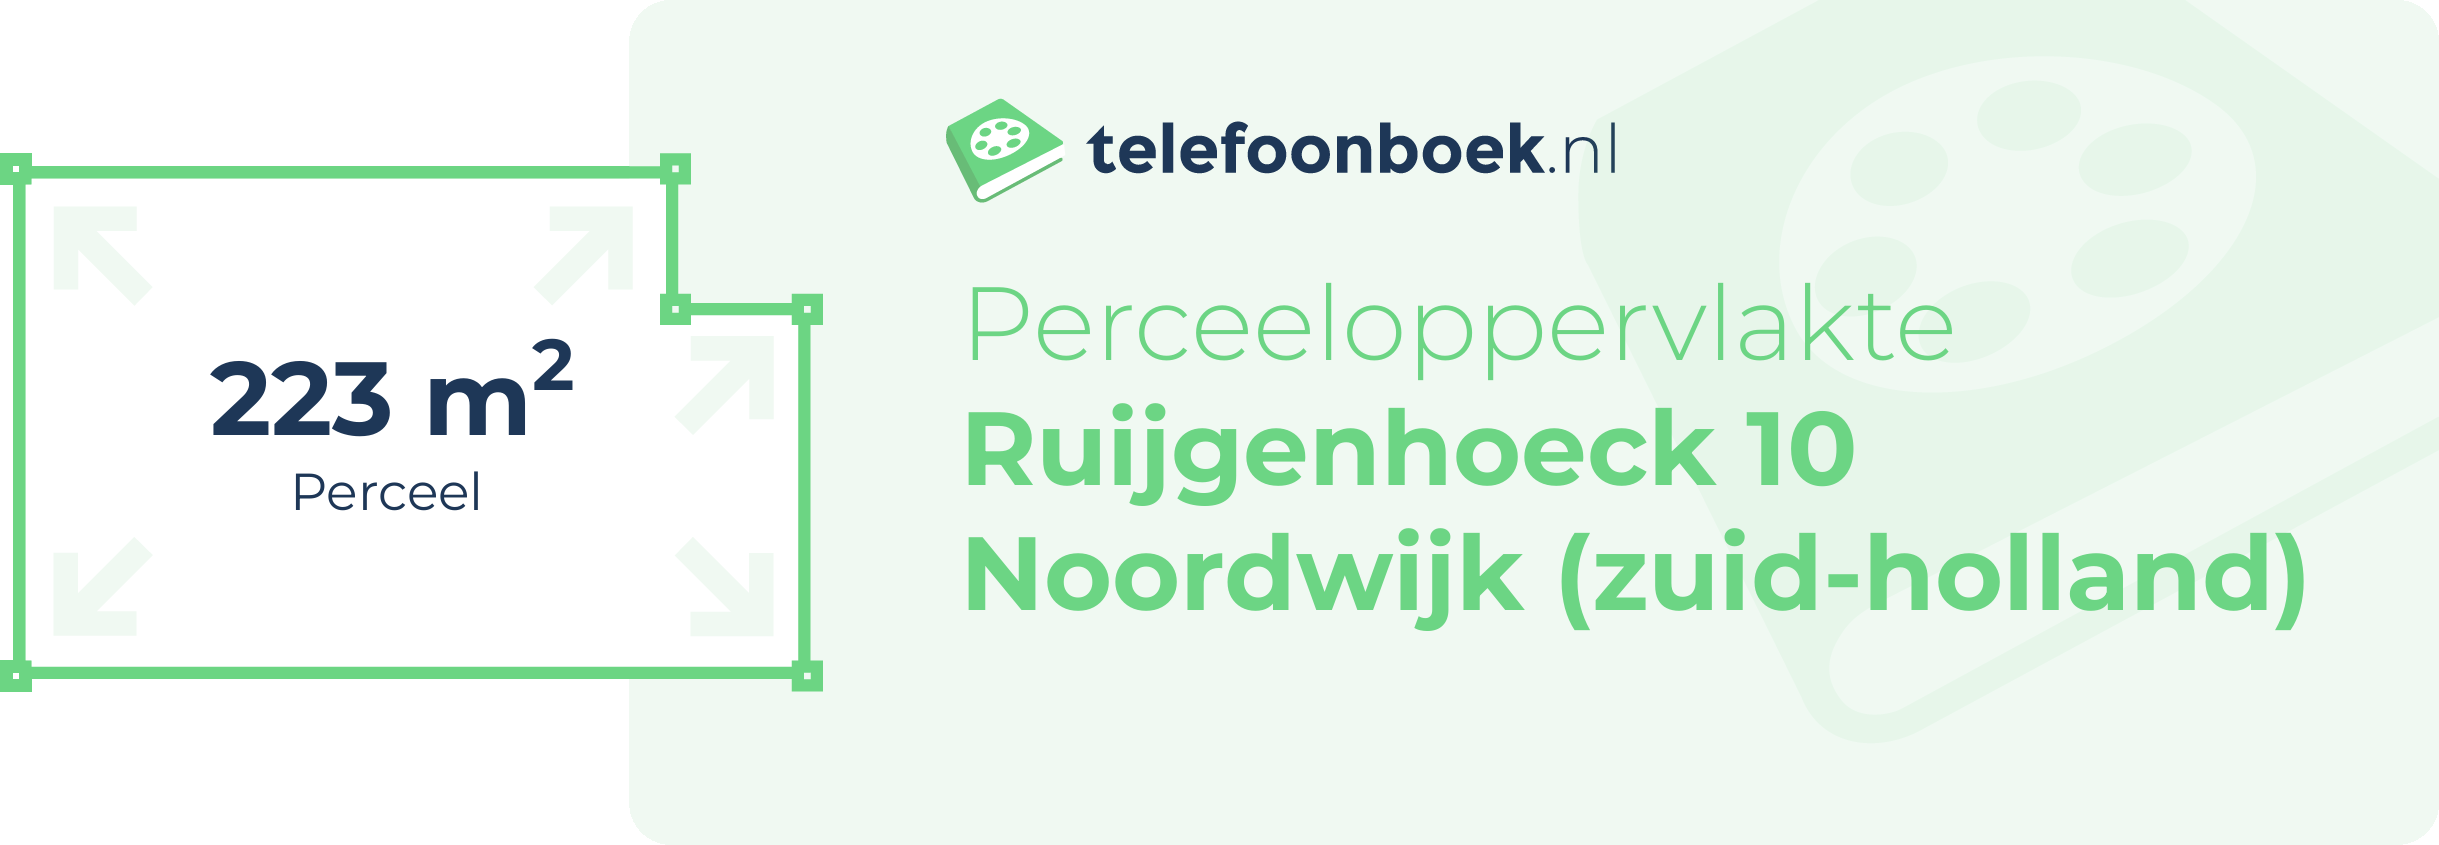 Perceeloppervlakte Ruijgenhoeck 10 Noordwijk (Zuid-Holland)